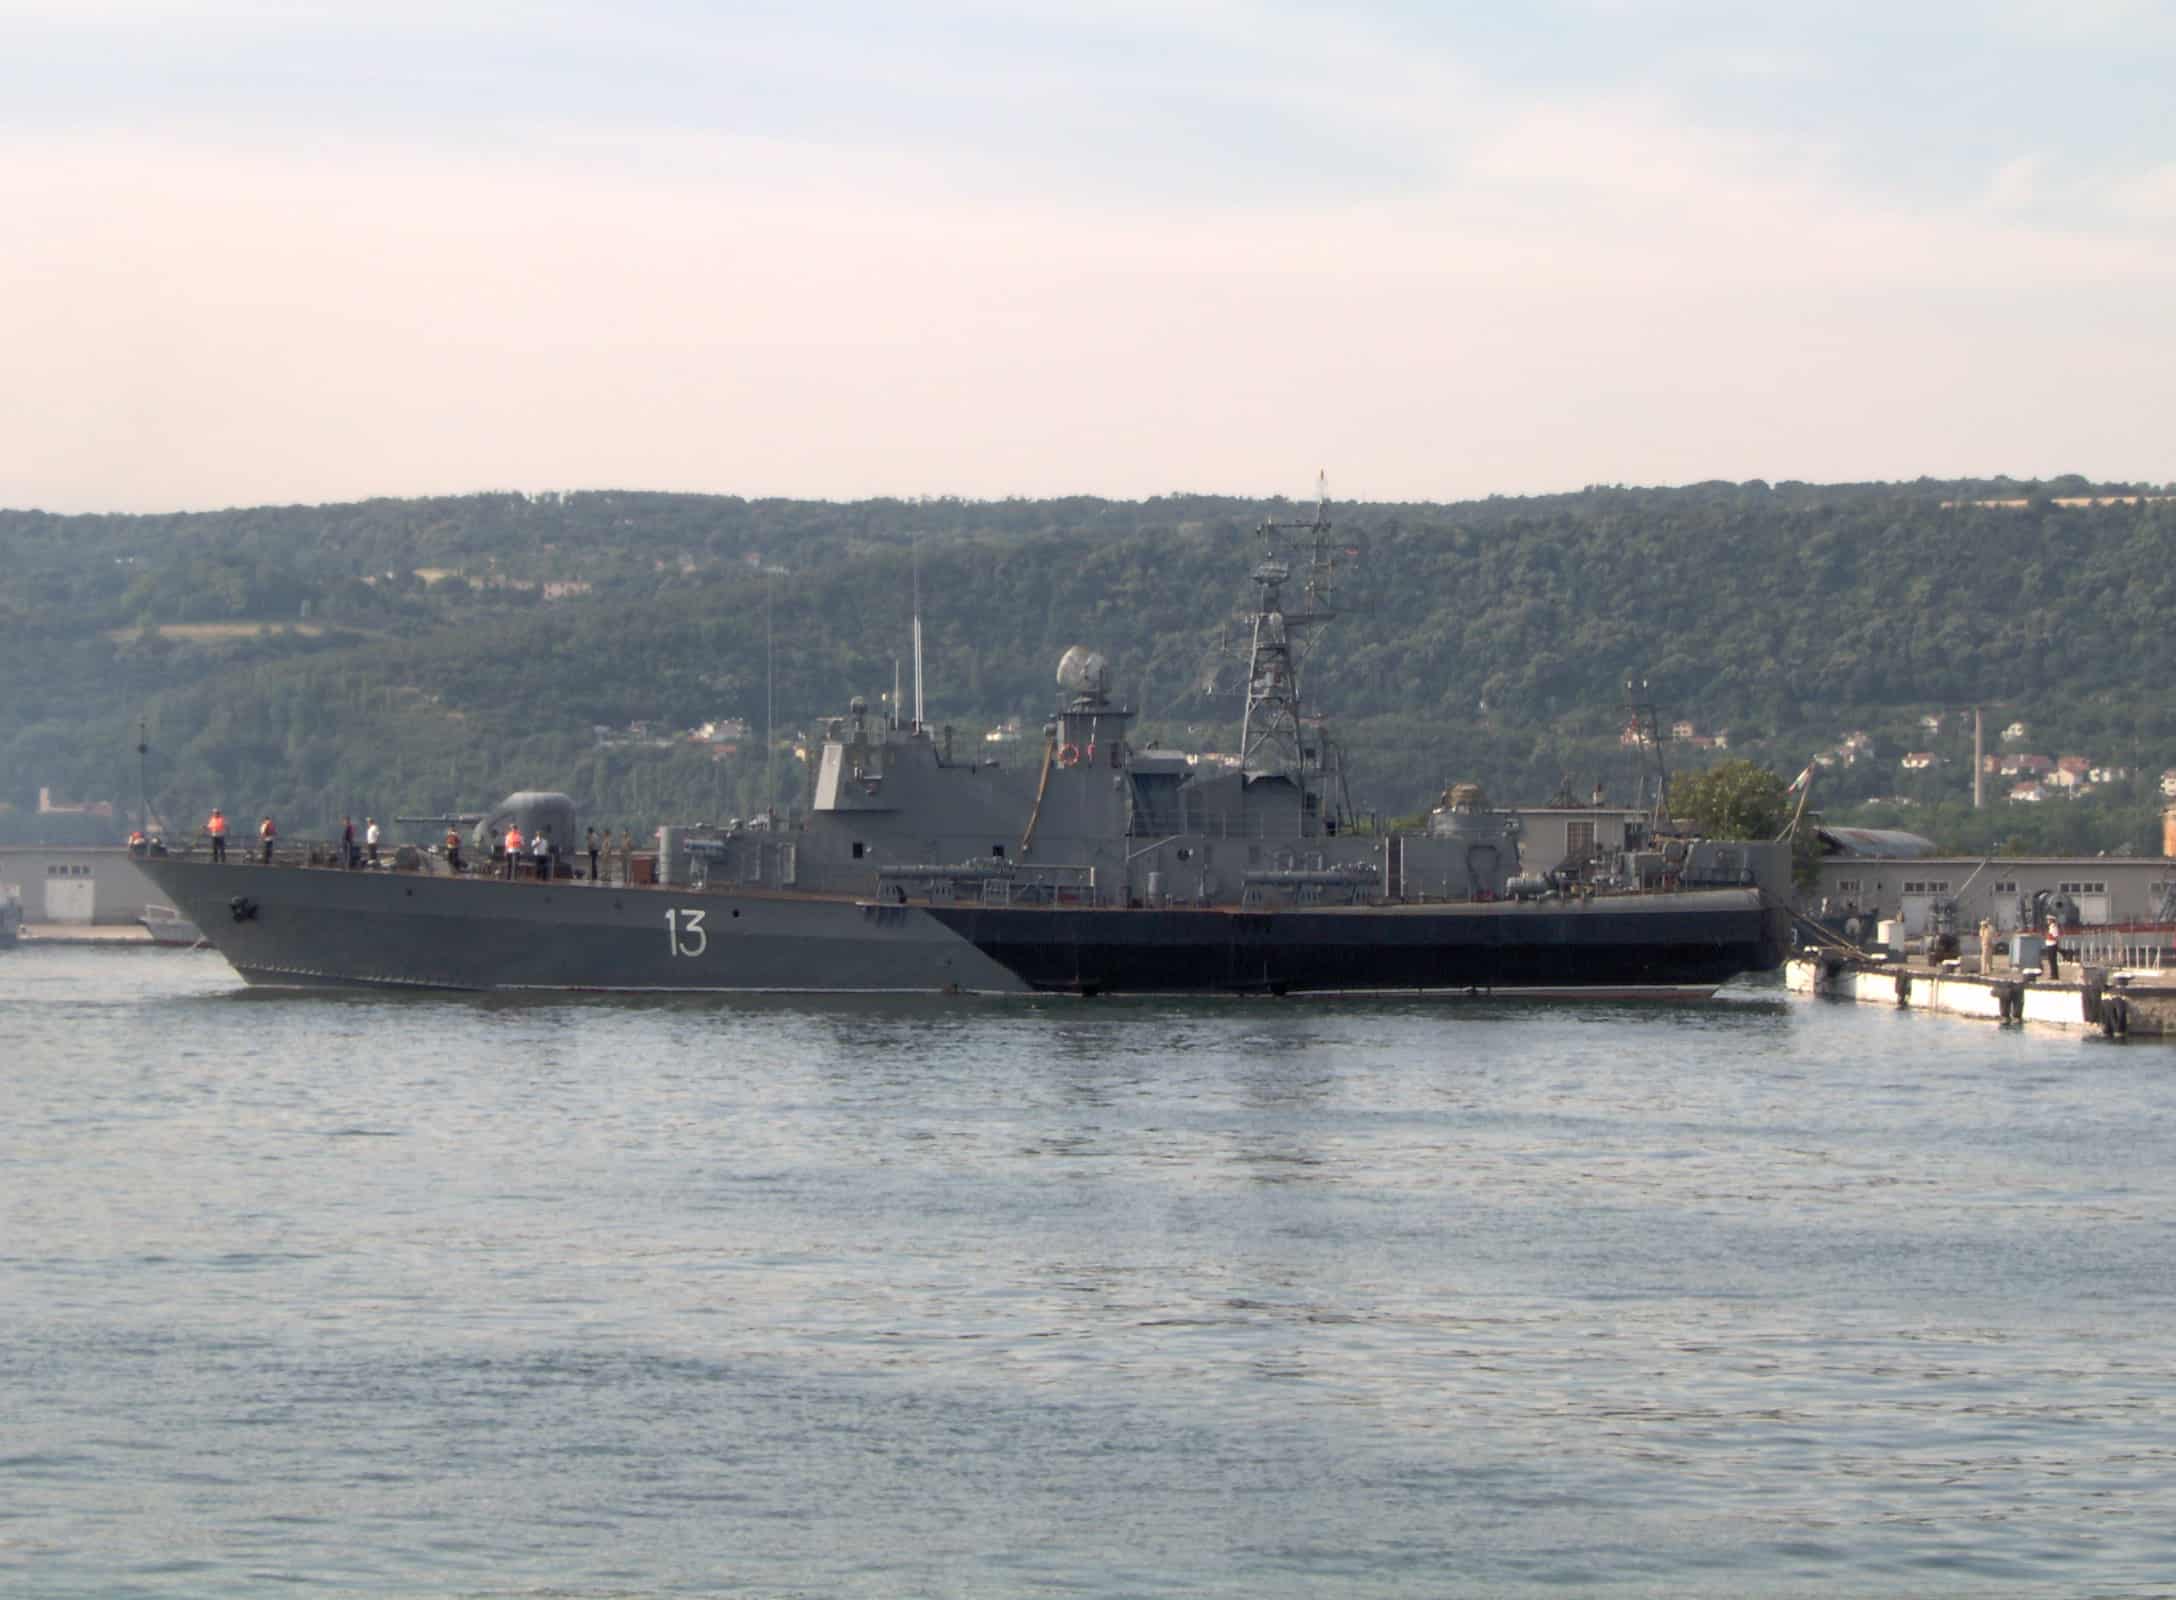 Bułgaria: marynarka wojenna otrzyma dwa nowe okręty bojowe